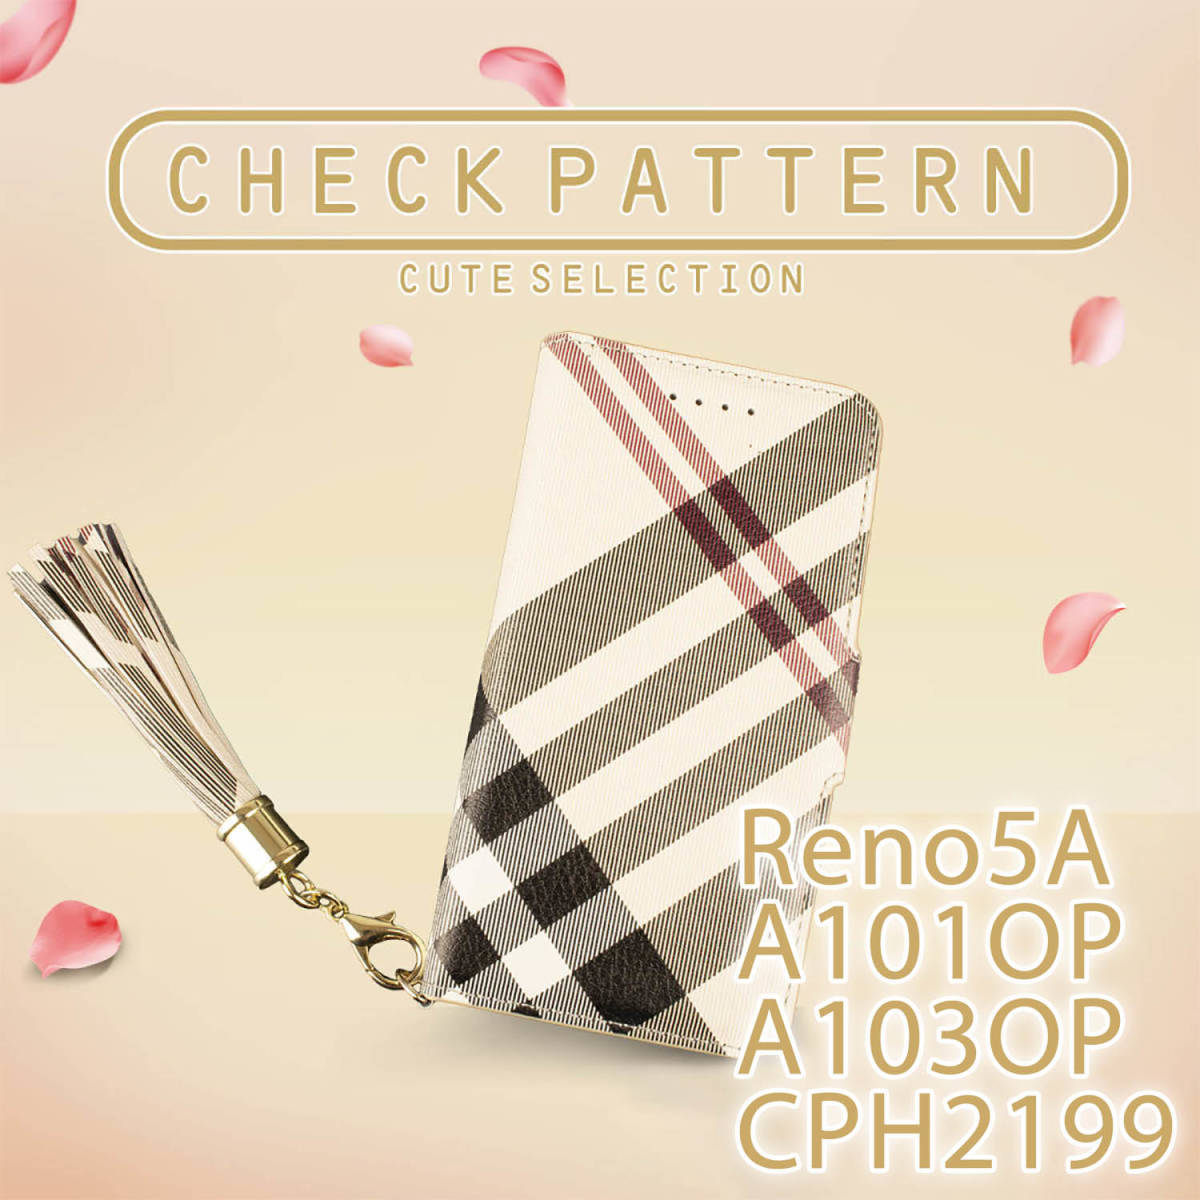 OPPO Reno5A ケース 手帳型 おしゃれ ベージュ 茶 A101OP カバー 鏡 可愛い ストラップ CPH2199 スマホケース チェック柄 A103OP 送料無料_画像1